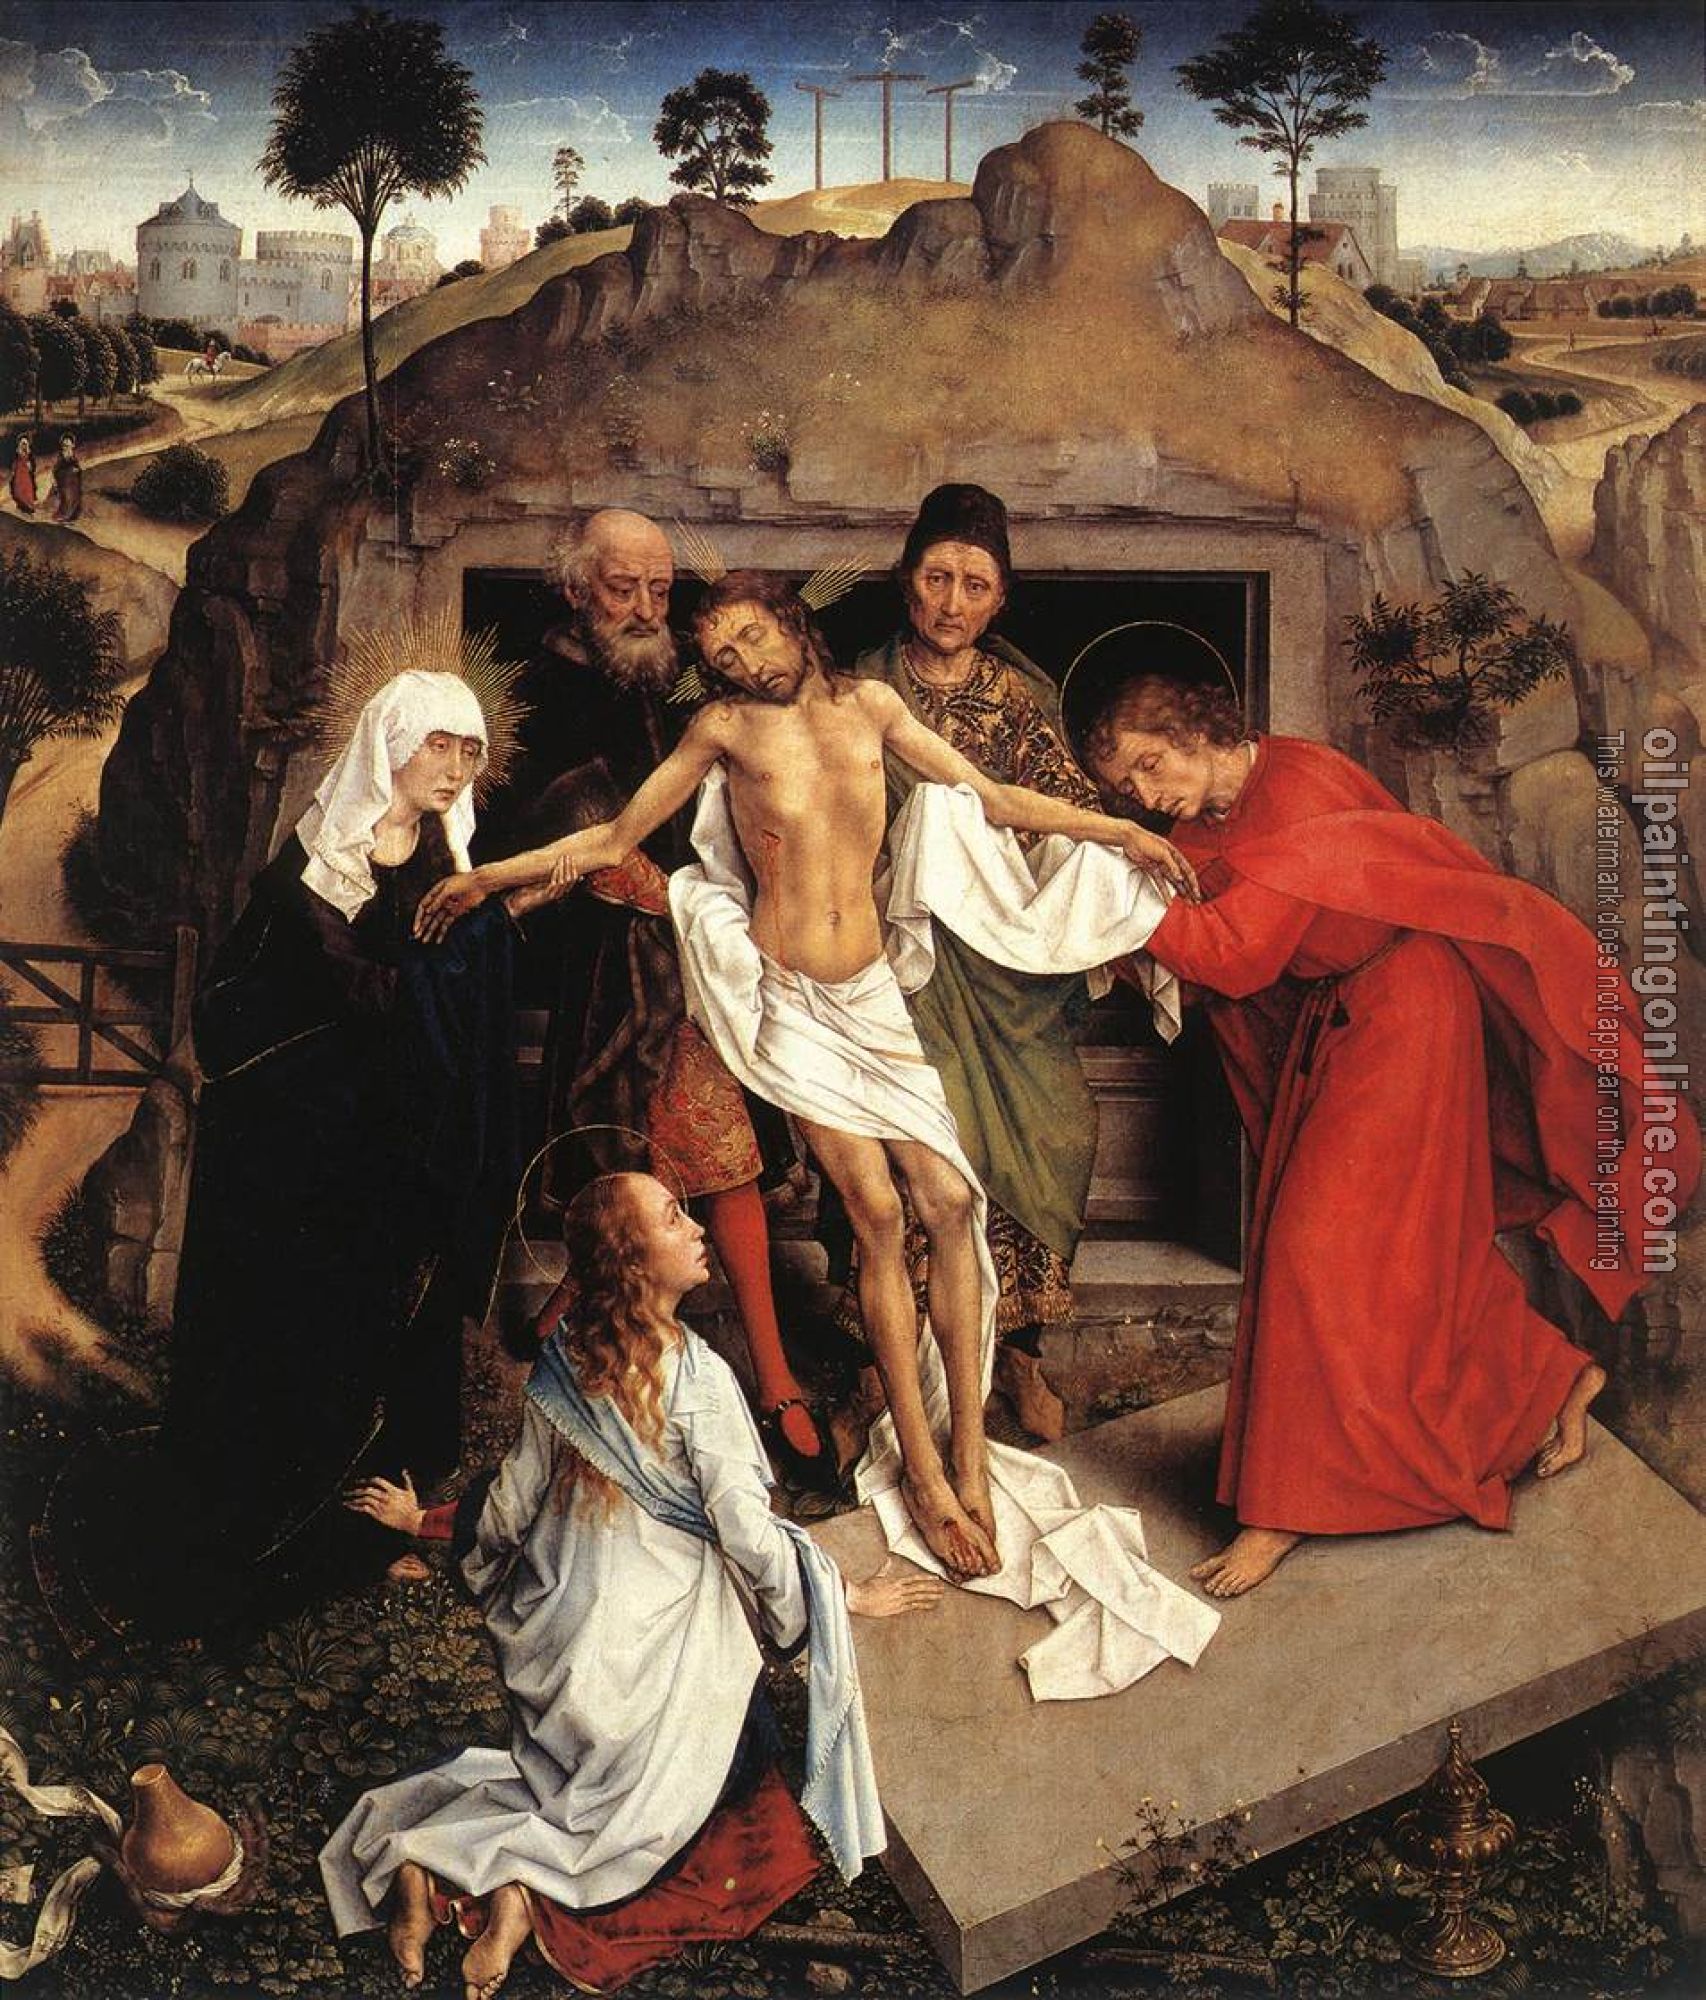 Weyden, Rogier van der - Entombment of Christ